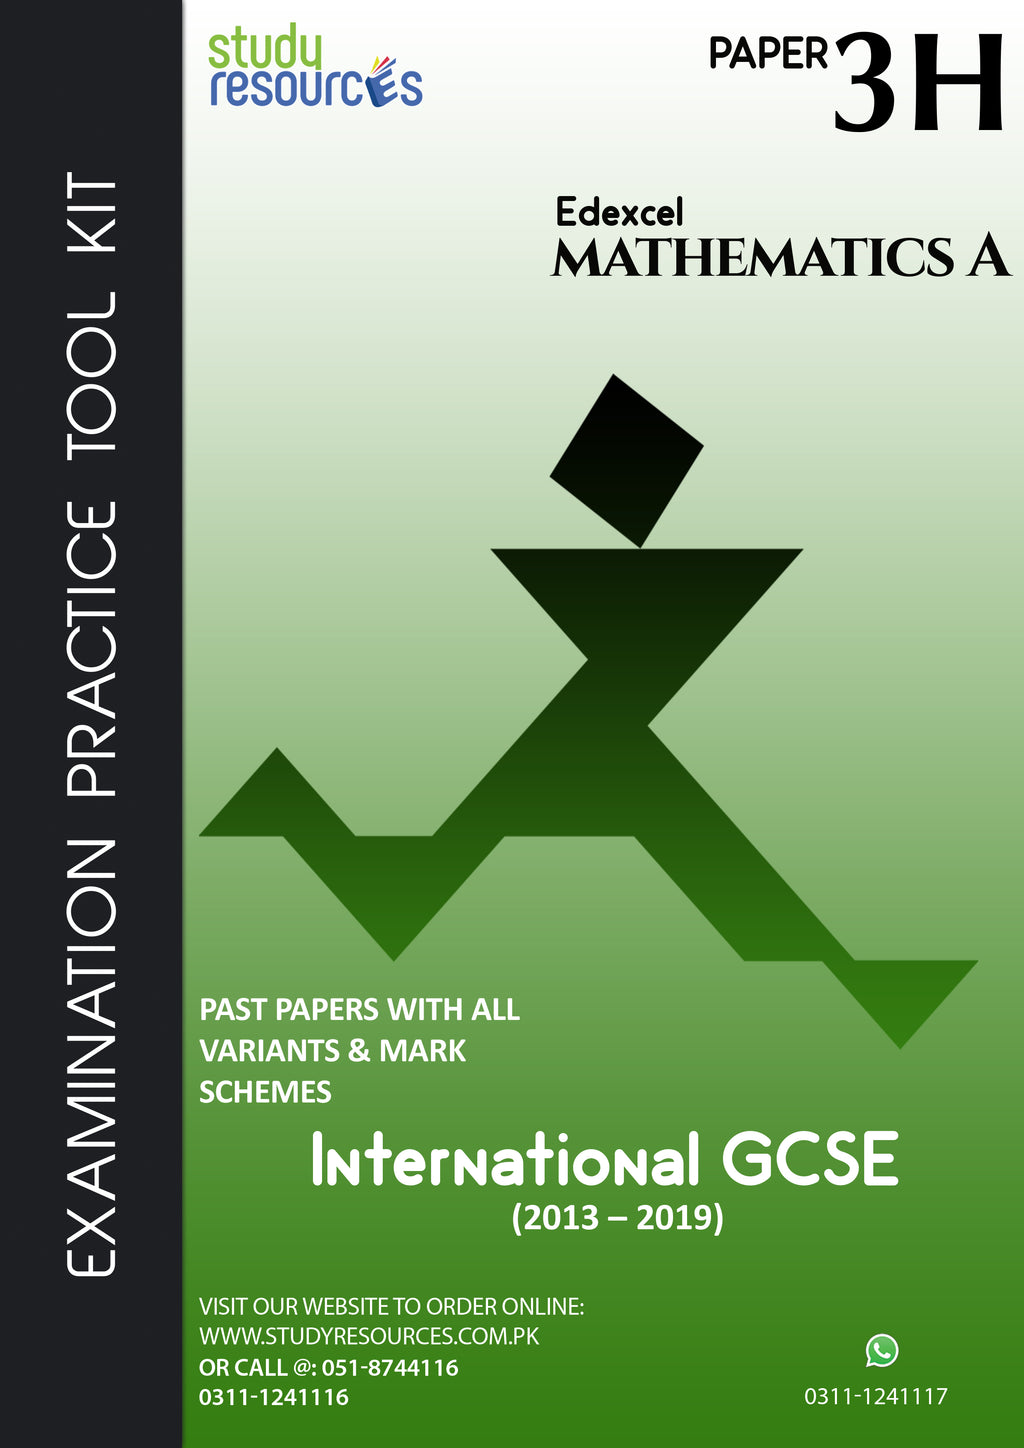 Edexcel IGCSE Mathematics "A" Paper-3H Past Papers (2013-2019)